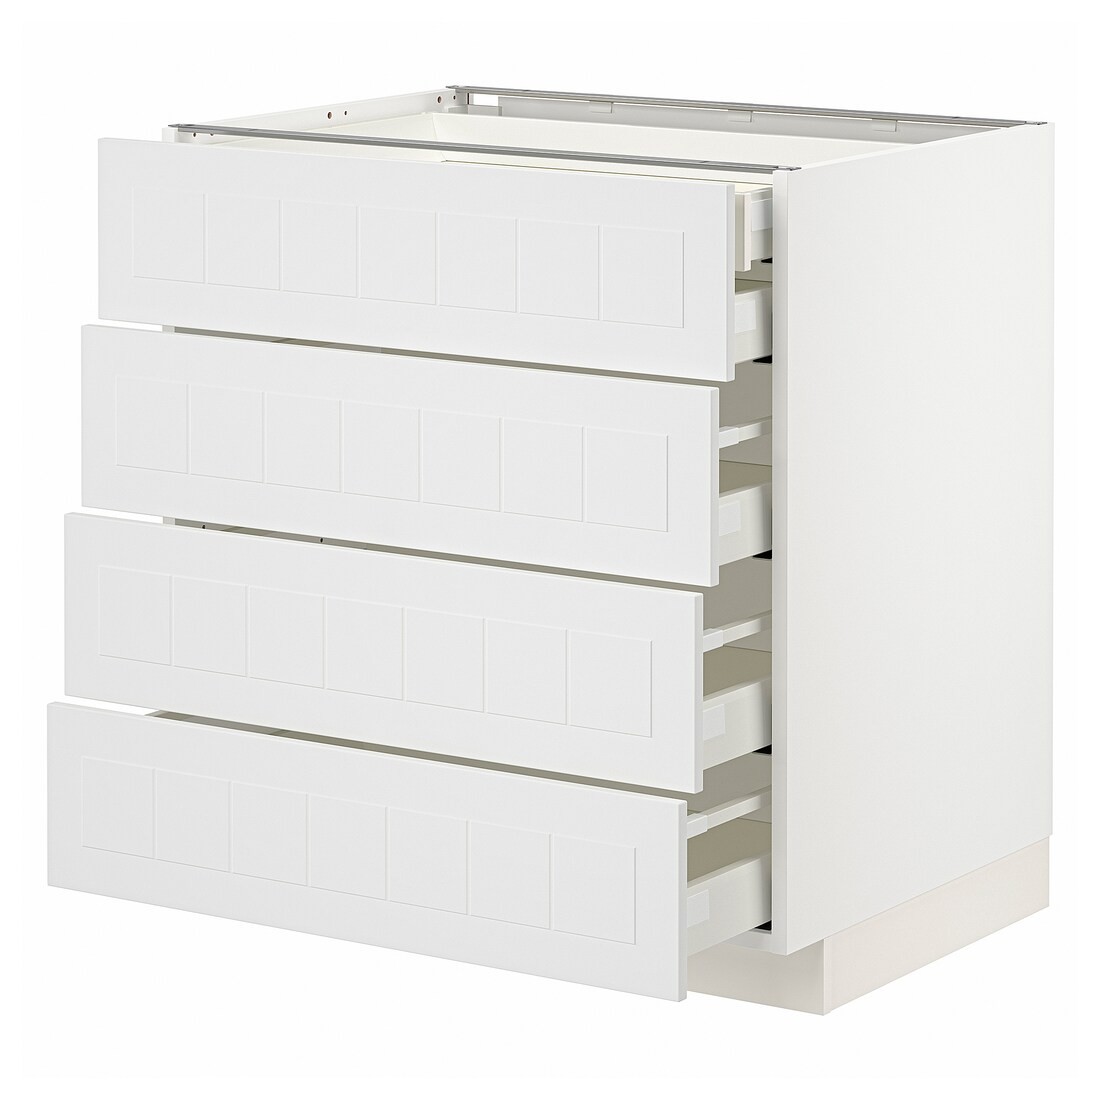 IKEA METOD МЕТОД / MAXIMERA МАКСИМЕРА Напольный шкаф с ящиками, белый / Stensund белый, 80x60 см 39409465 394.094.65